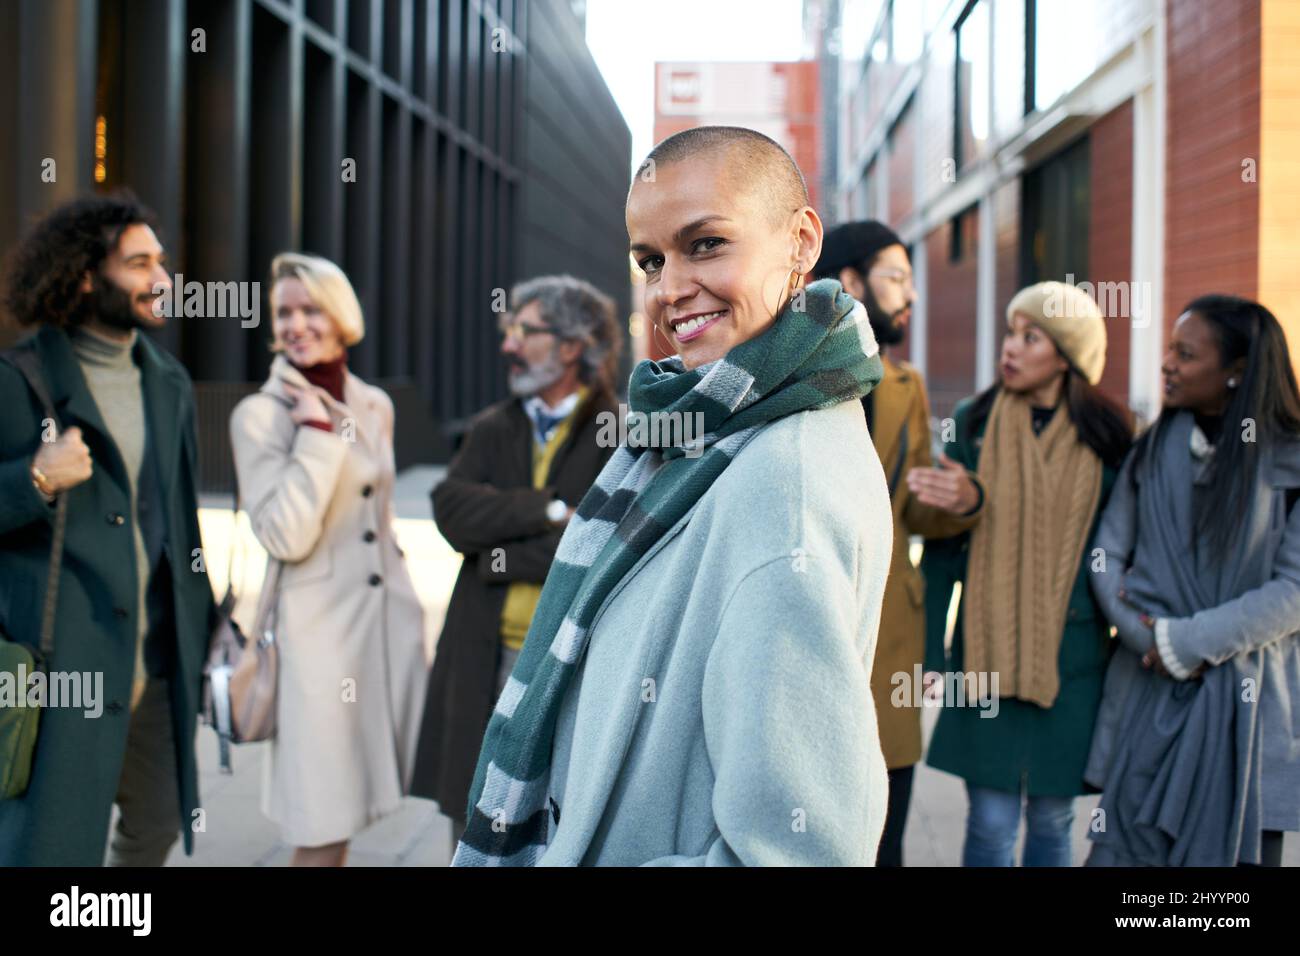 Eine befähigte und selbstbewusste Geschäftsfrau, die durch die Menge der Mitarbeiter im Finanzzentrum lächelnd auf die Kamera blickt. Stockfoto